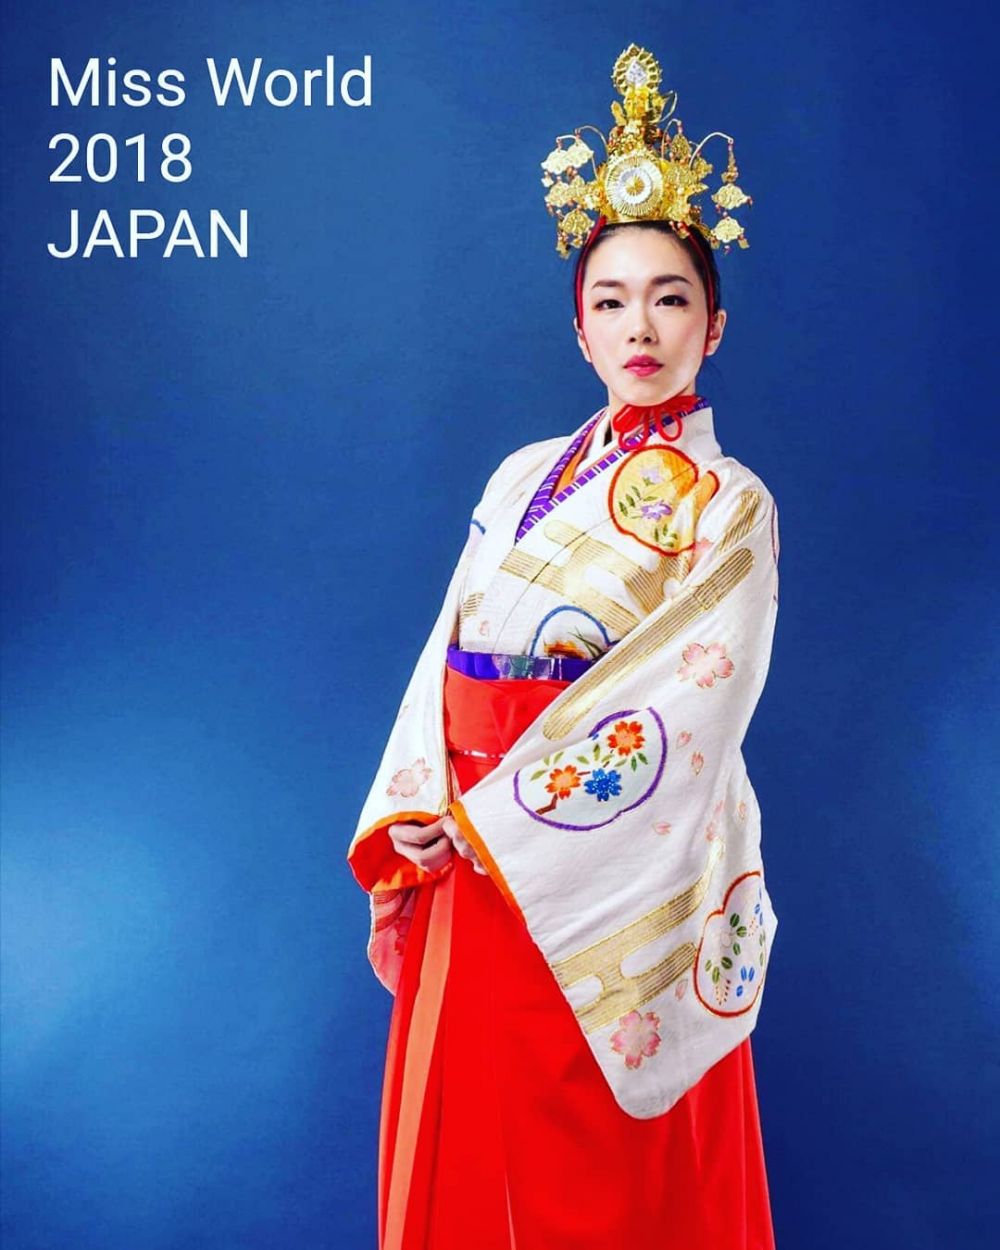 Kanako Date, Miss World Jepang keturunan samurai legendaris